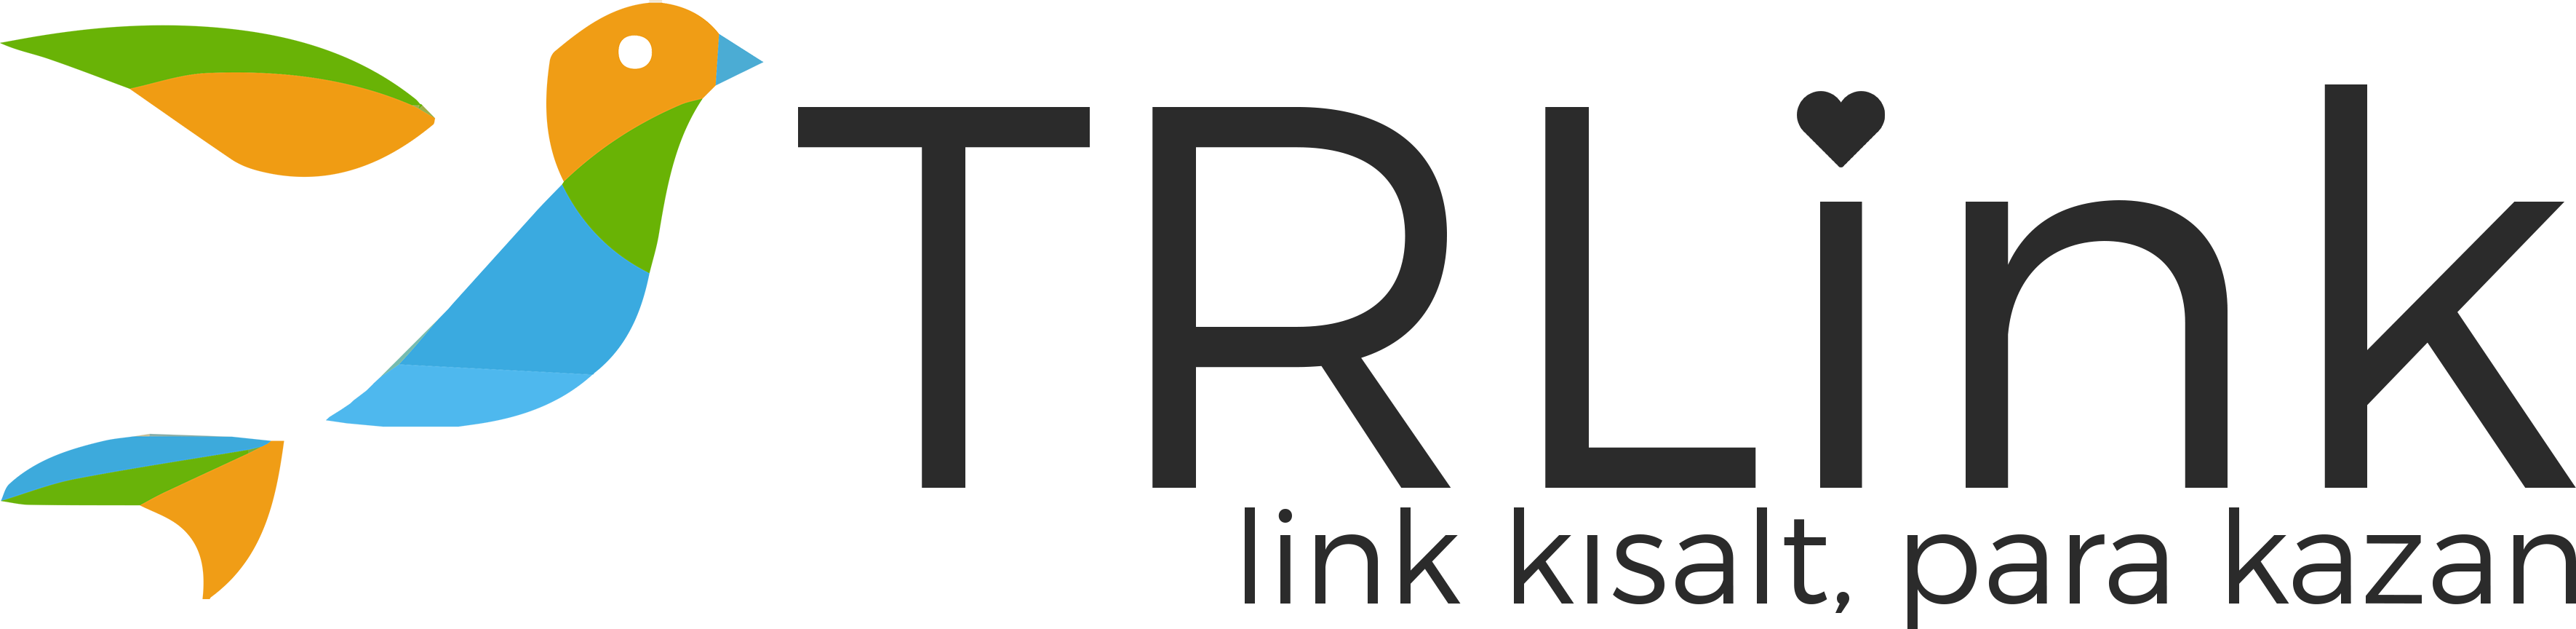 Https tr link. Линк logo. Тр link лого. Терра линк логотип. Вай фай tr link.